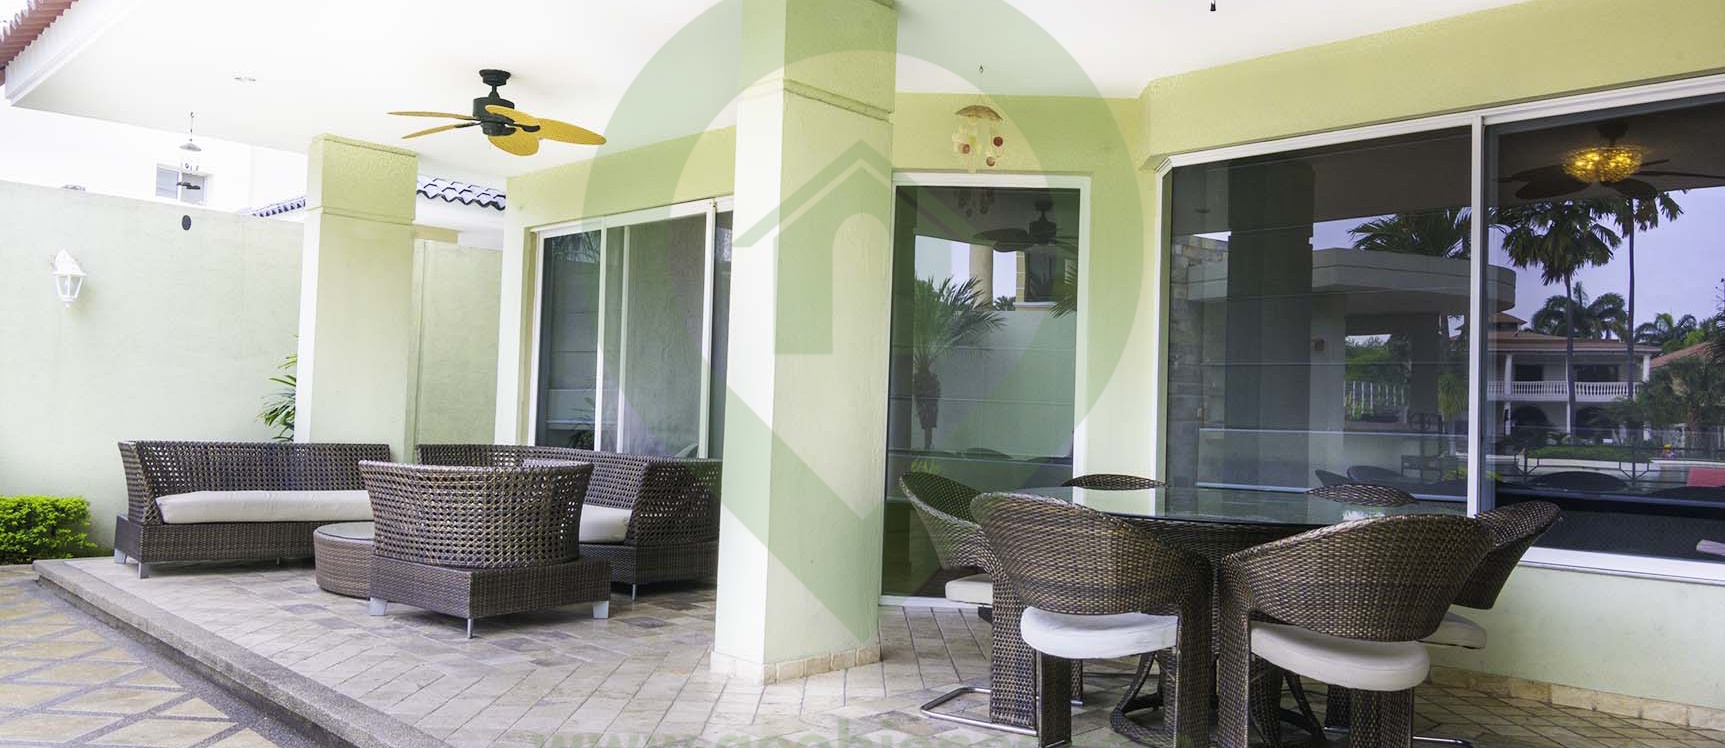 GeoBienes - Casa en venta en Lago Sol vía a Samborondón - Plusvalia Guayaquil Casas de venta y alquiler Inmobiliaria Ecuador